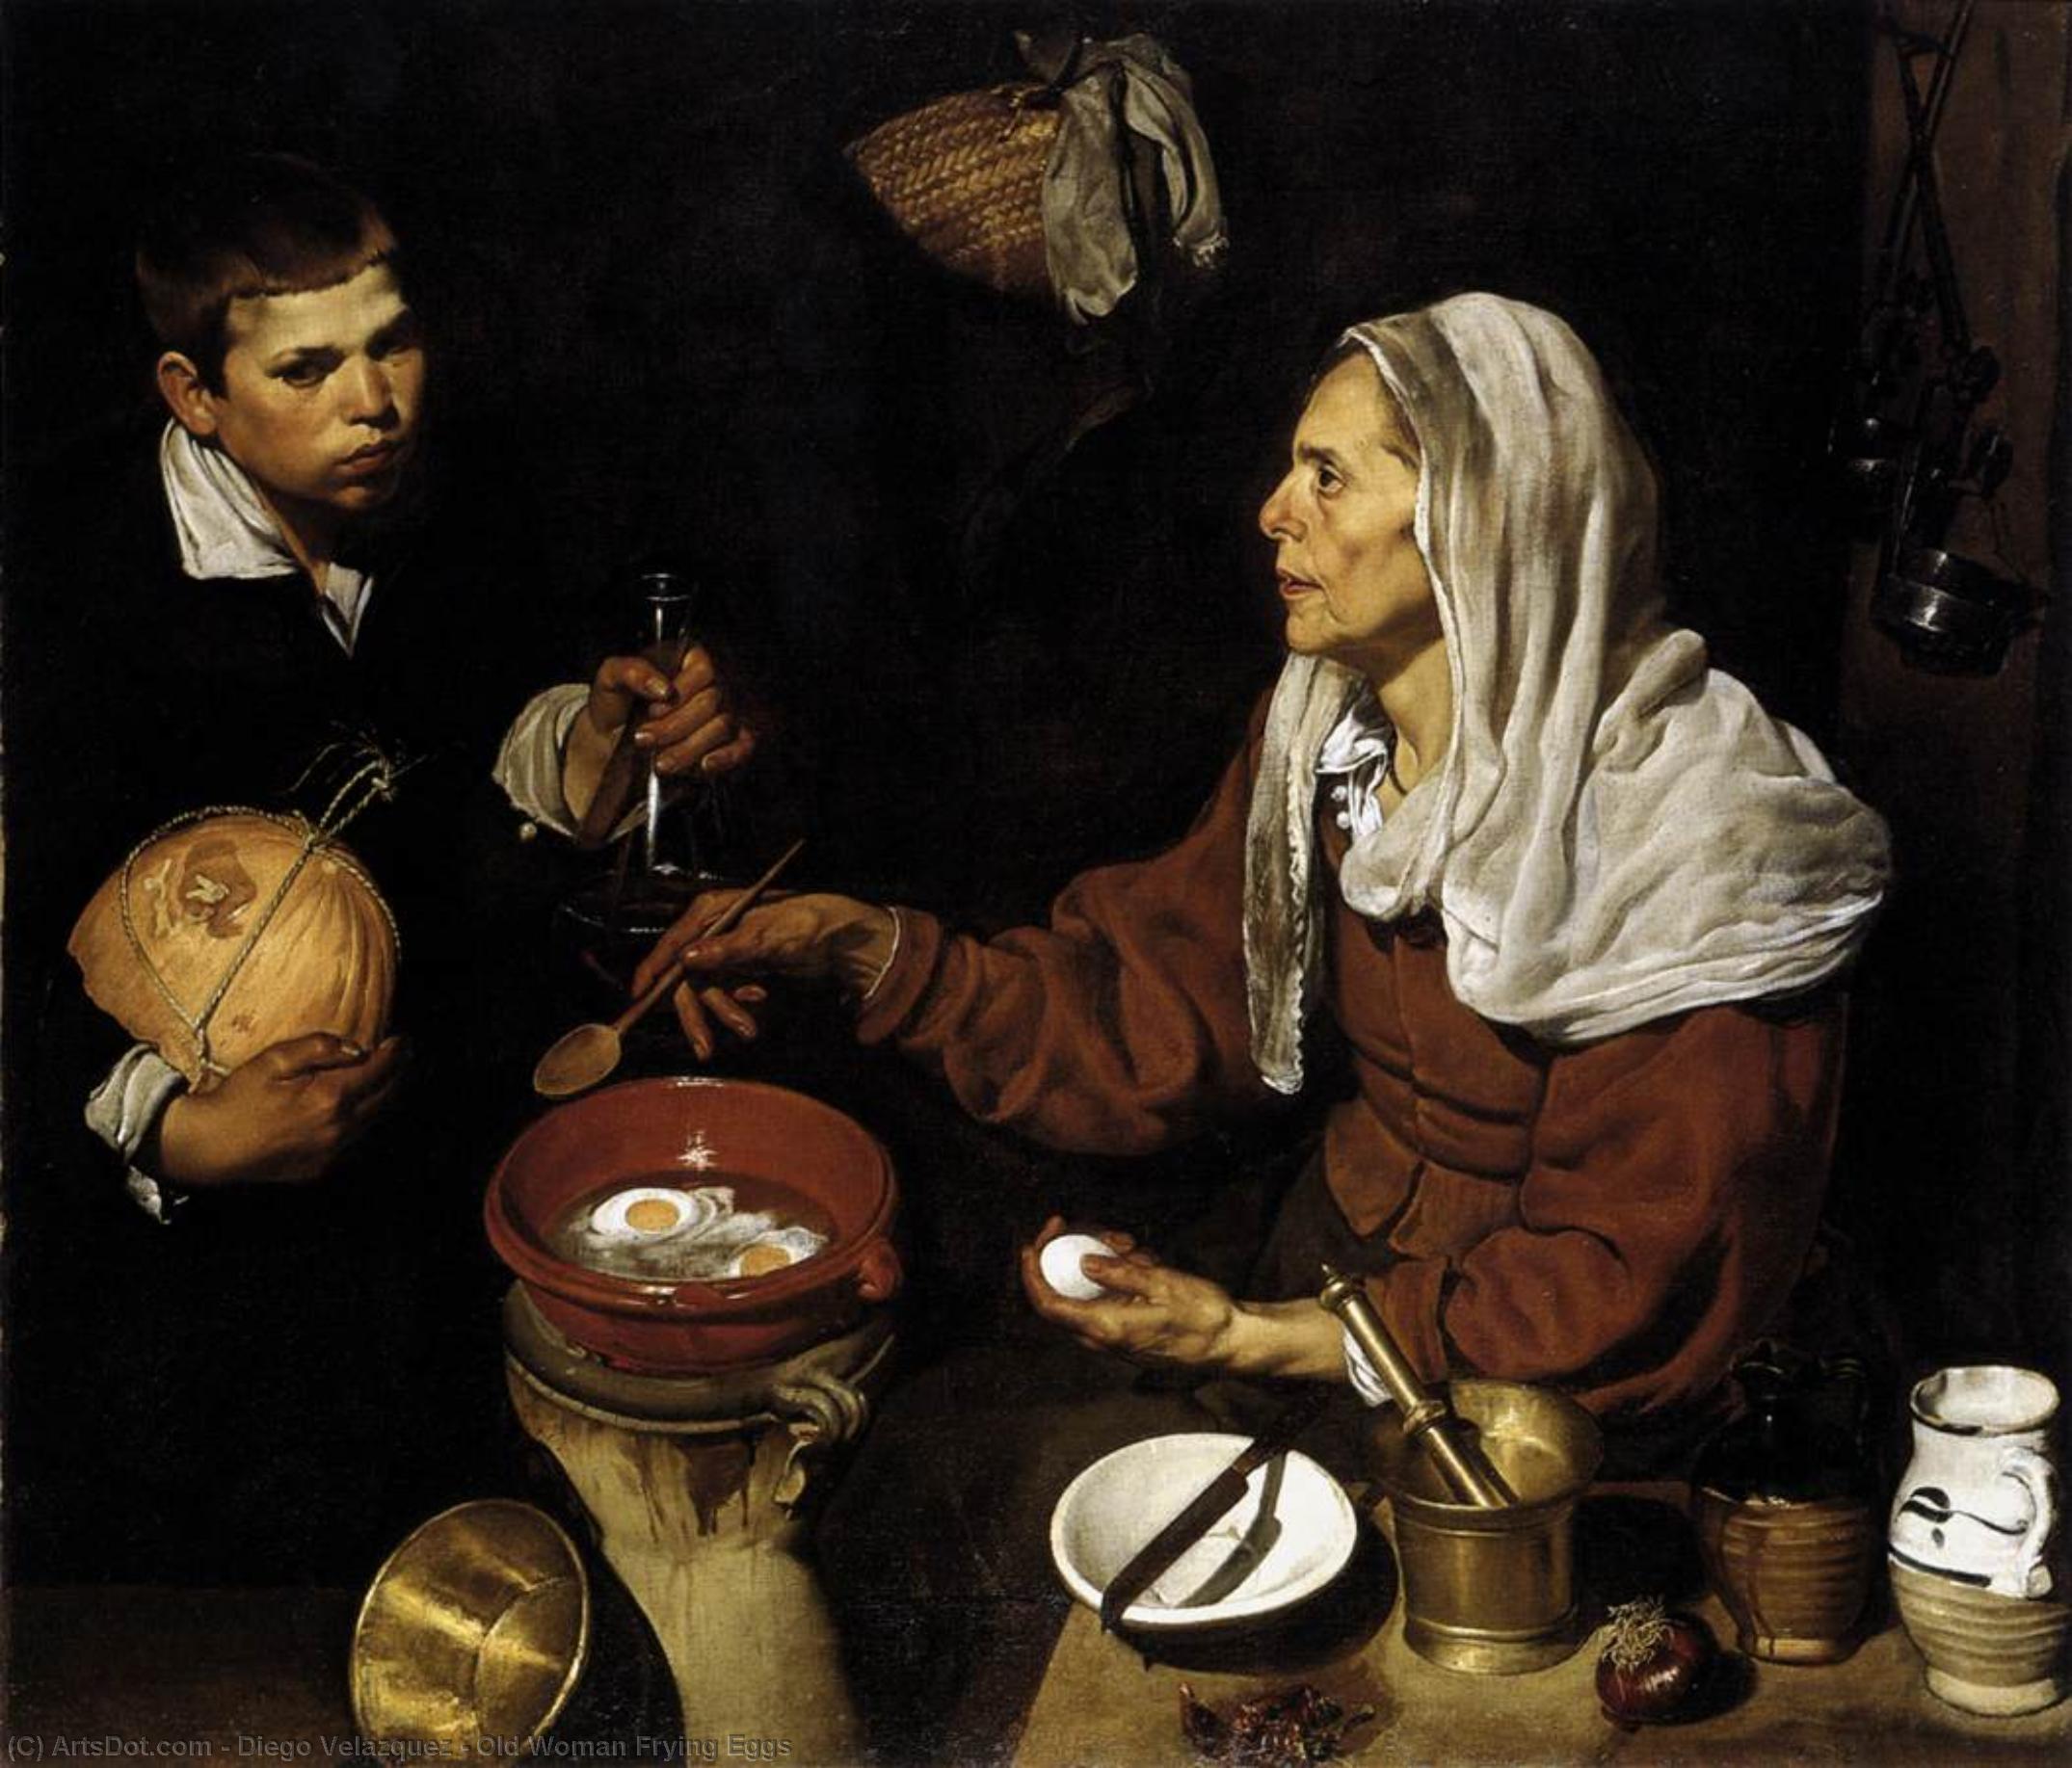 WikiOO.org - Εγκυκλοπαίδεια Καλών Τεχνών - Ζωγραφική, έργα τέχνης Diego Velazquez - Old Woman Frying Eggs